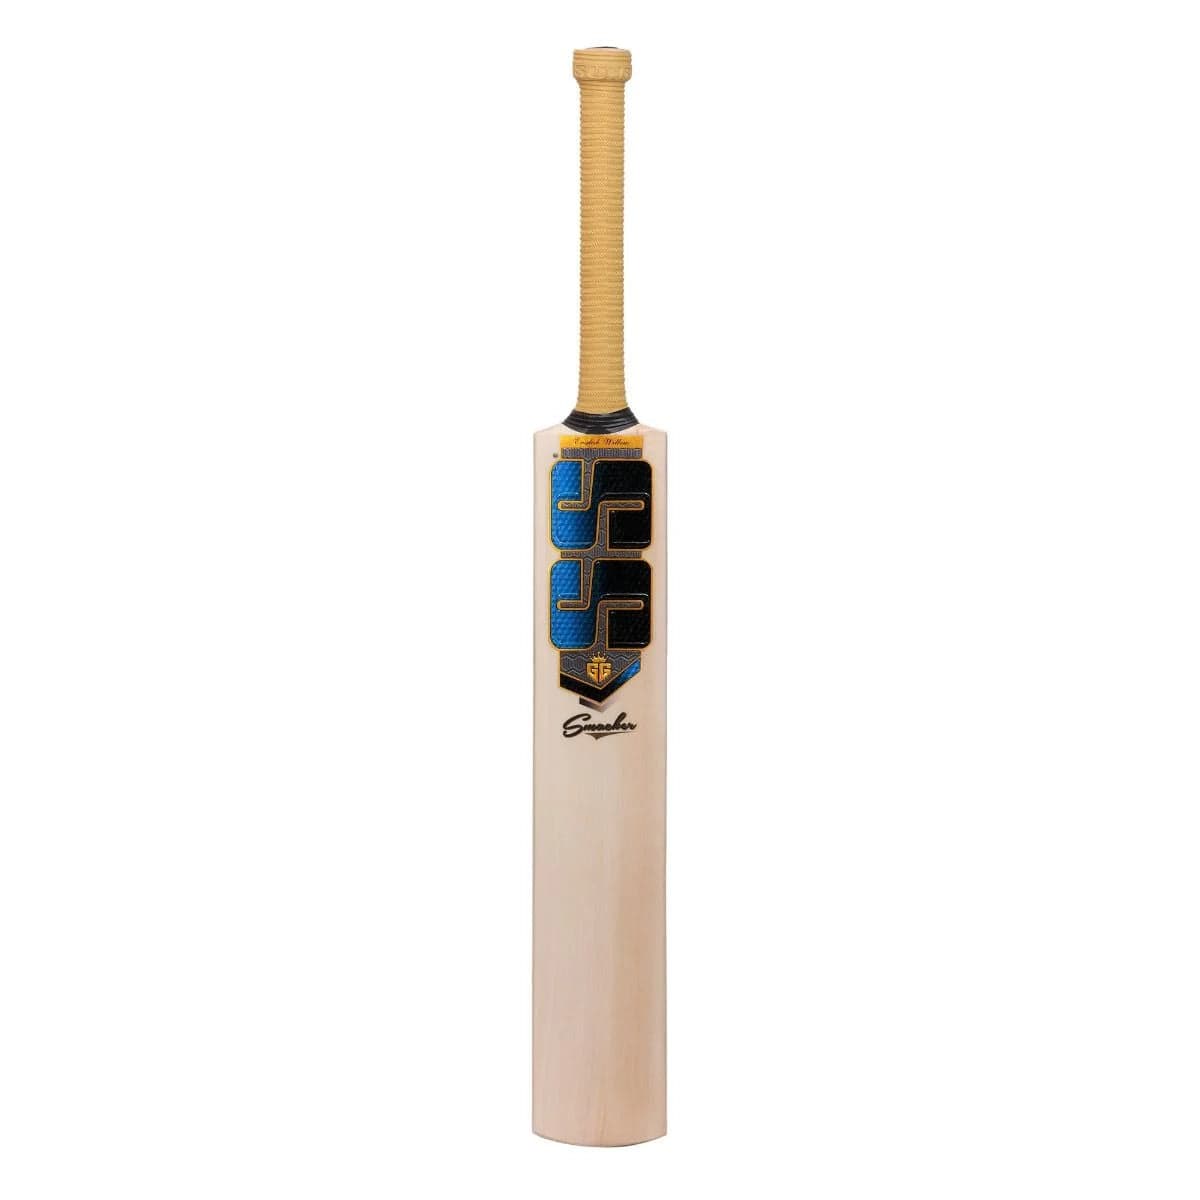 SS Cricket Bats Short Handle / Light 2lbs 8oz - 2lbs 10oz SS GG Smacker Junior Cricket Bat